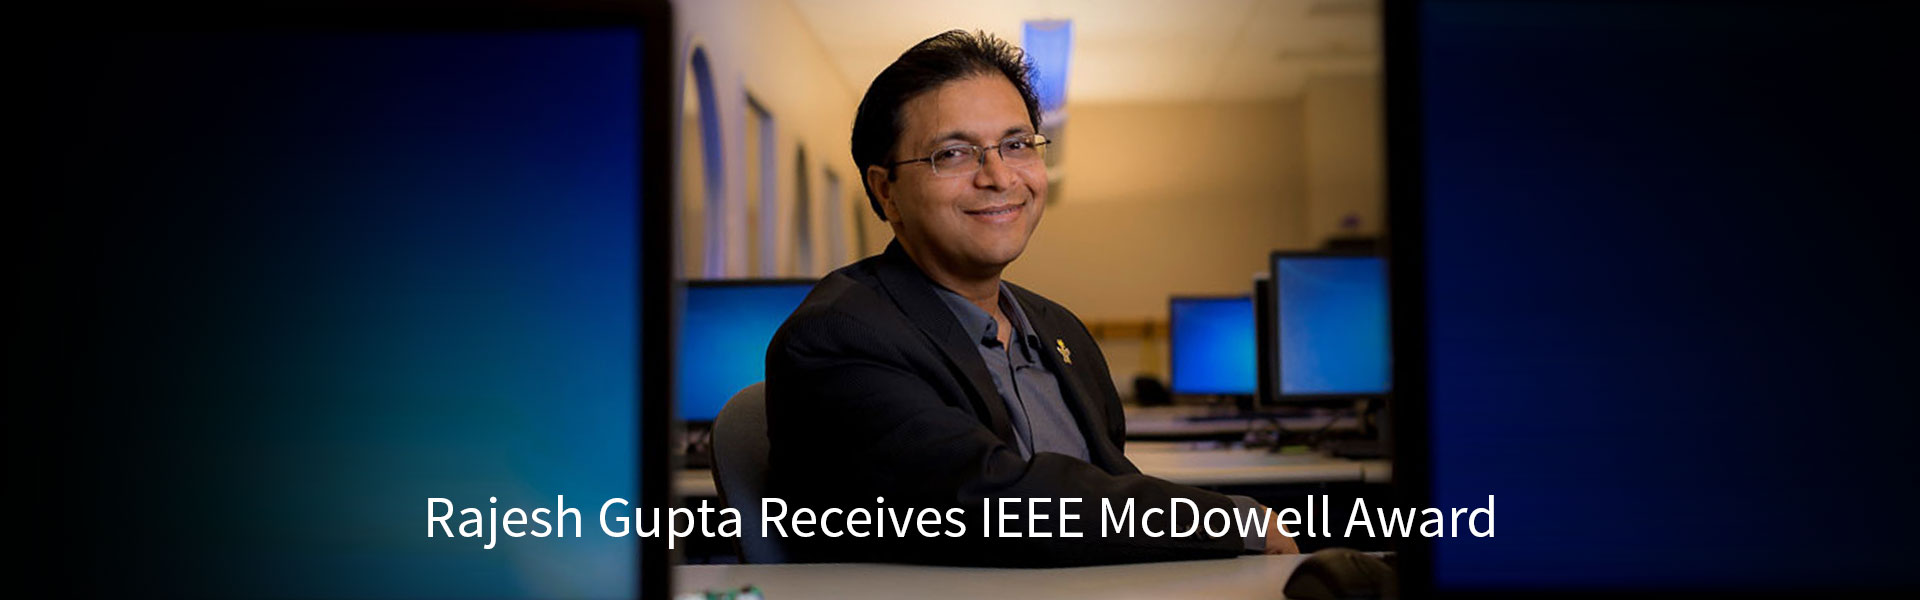 Rajesh Gupta IEEE McDowell Award